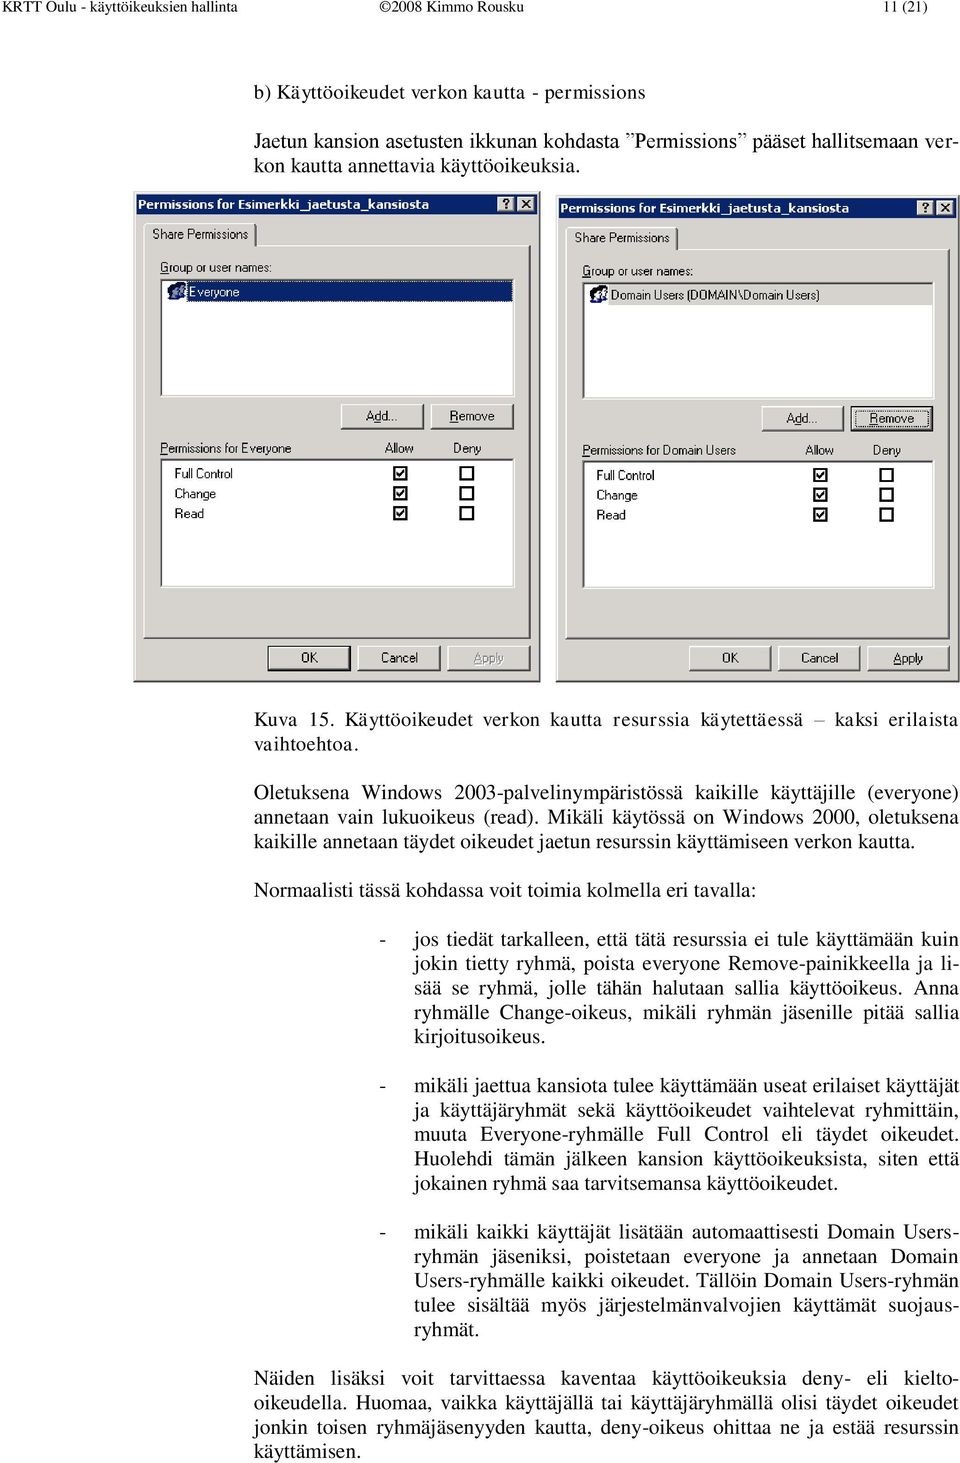 Oletuksena Windows 2003-palvelinympäristössä kaikille käyttäjille (everyone) annetaan vain lukuoikeus (read).